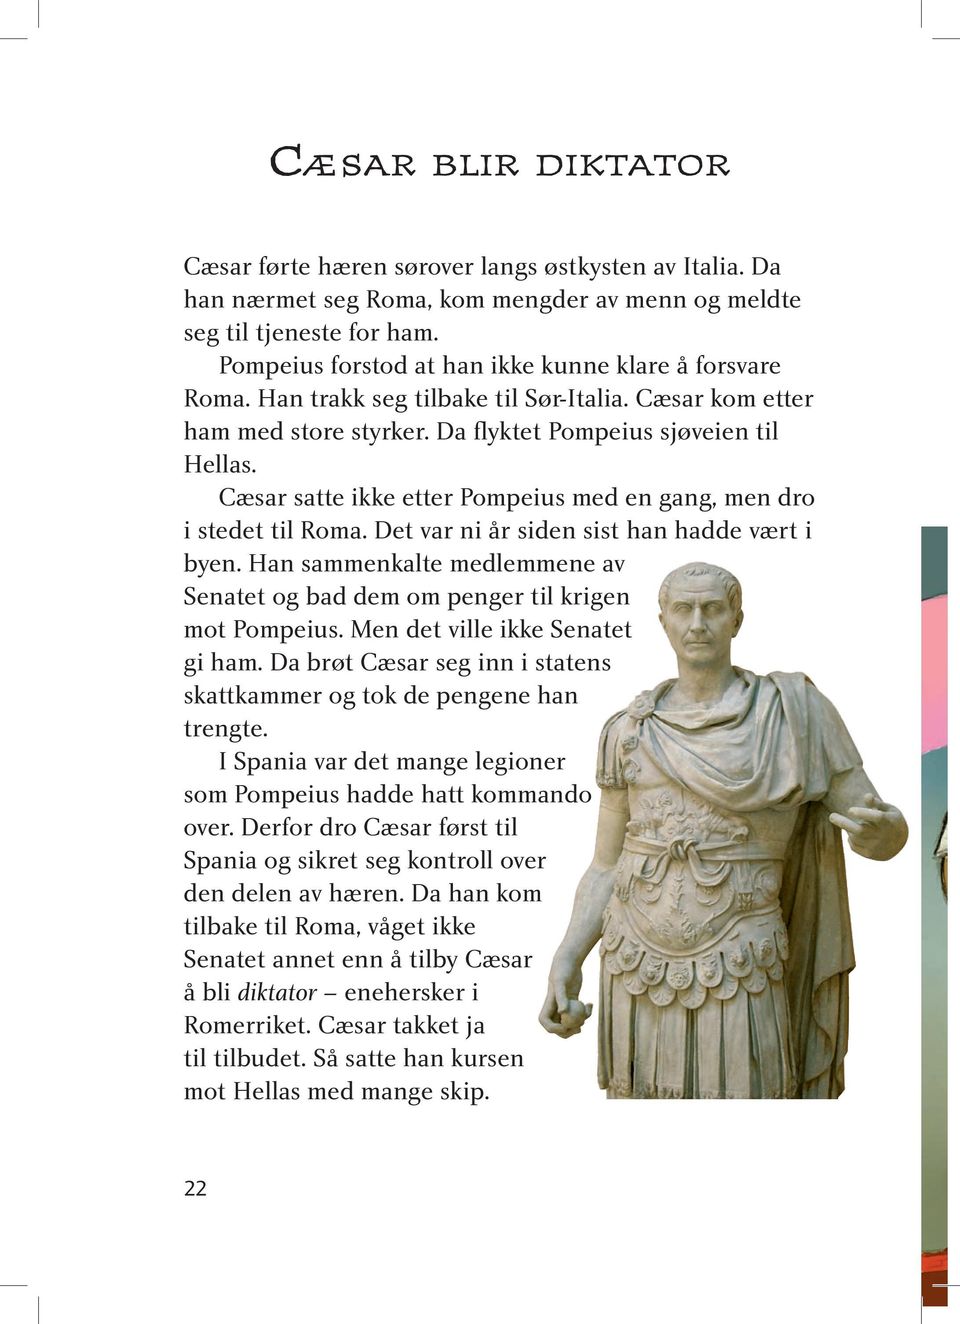 Cæsar satte ikke etter Pompeius med en gang, men dro i stedet til Roma. Det var ni år siden sist han hadde vært i byen.